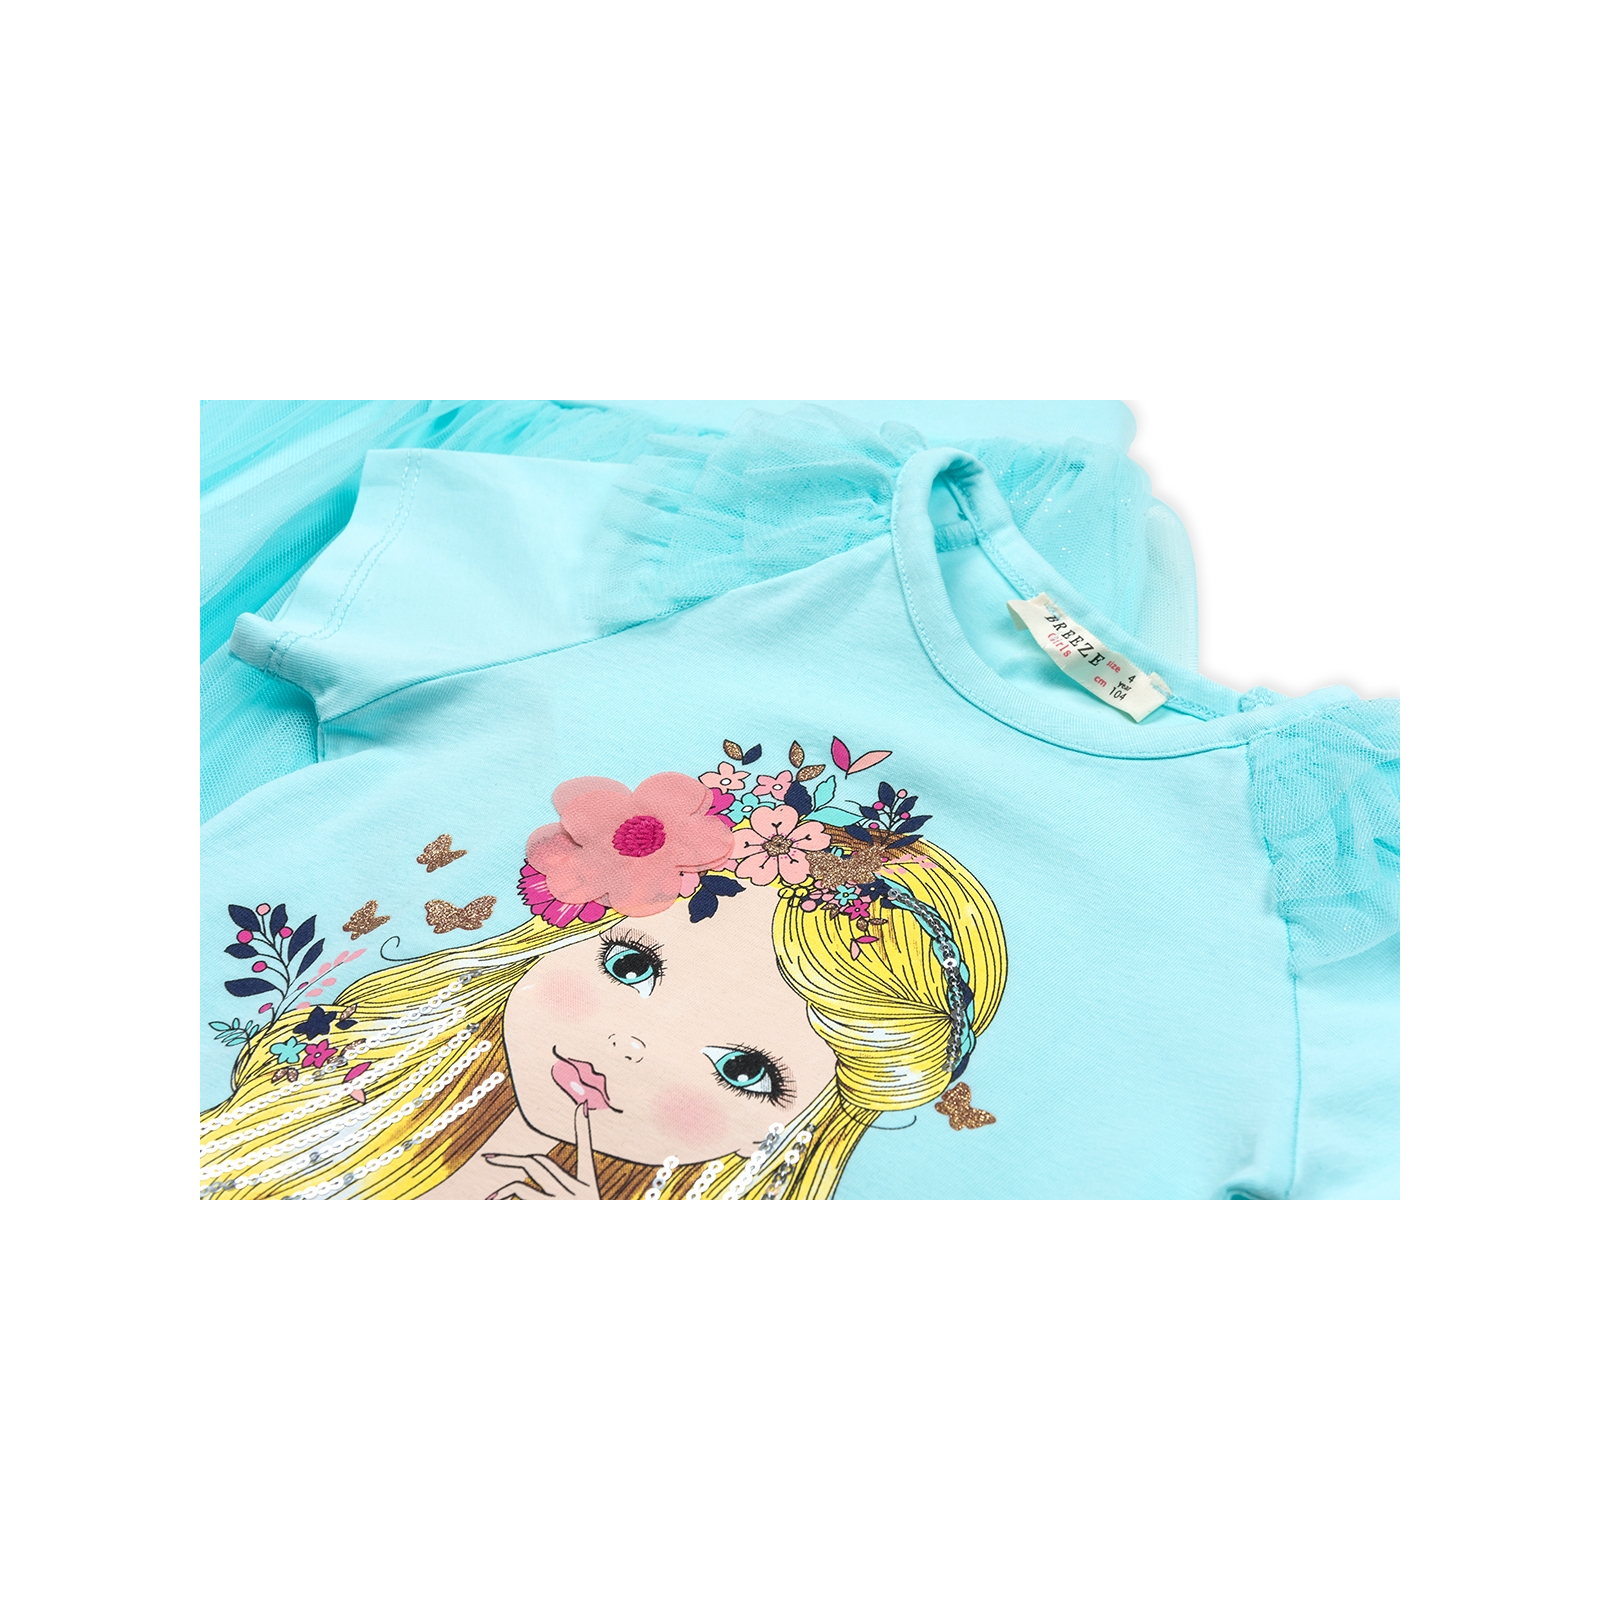 Набор детской одежды Breeze с девочкой и фатиновой юбкой (11826-104G-blue) изображение 4